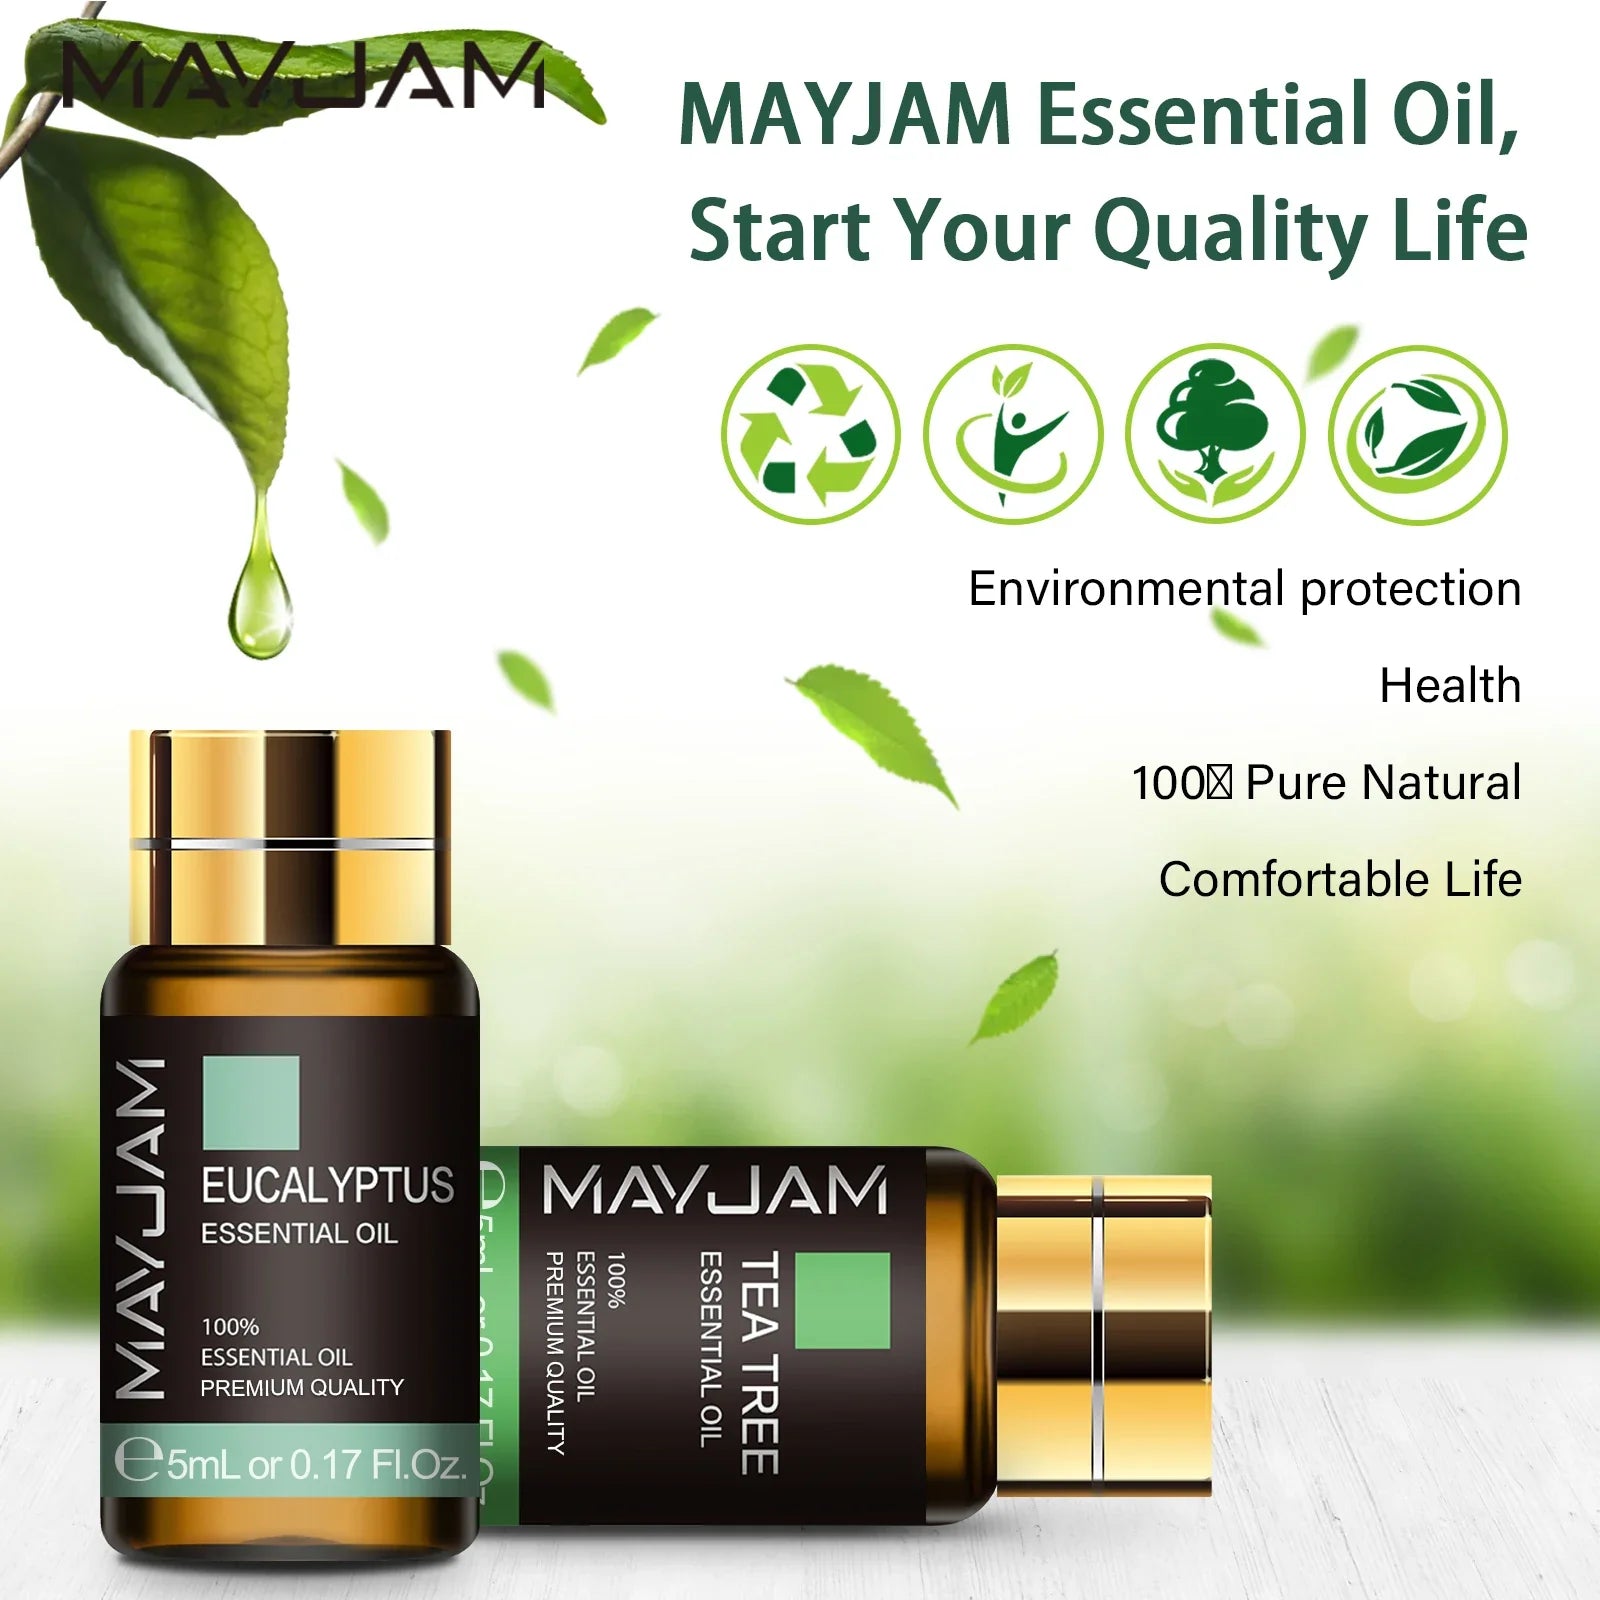 Mayjam Essential Oils (20 Bottles) - Ledexor